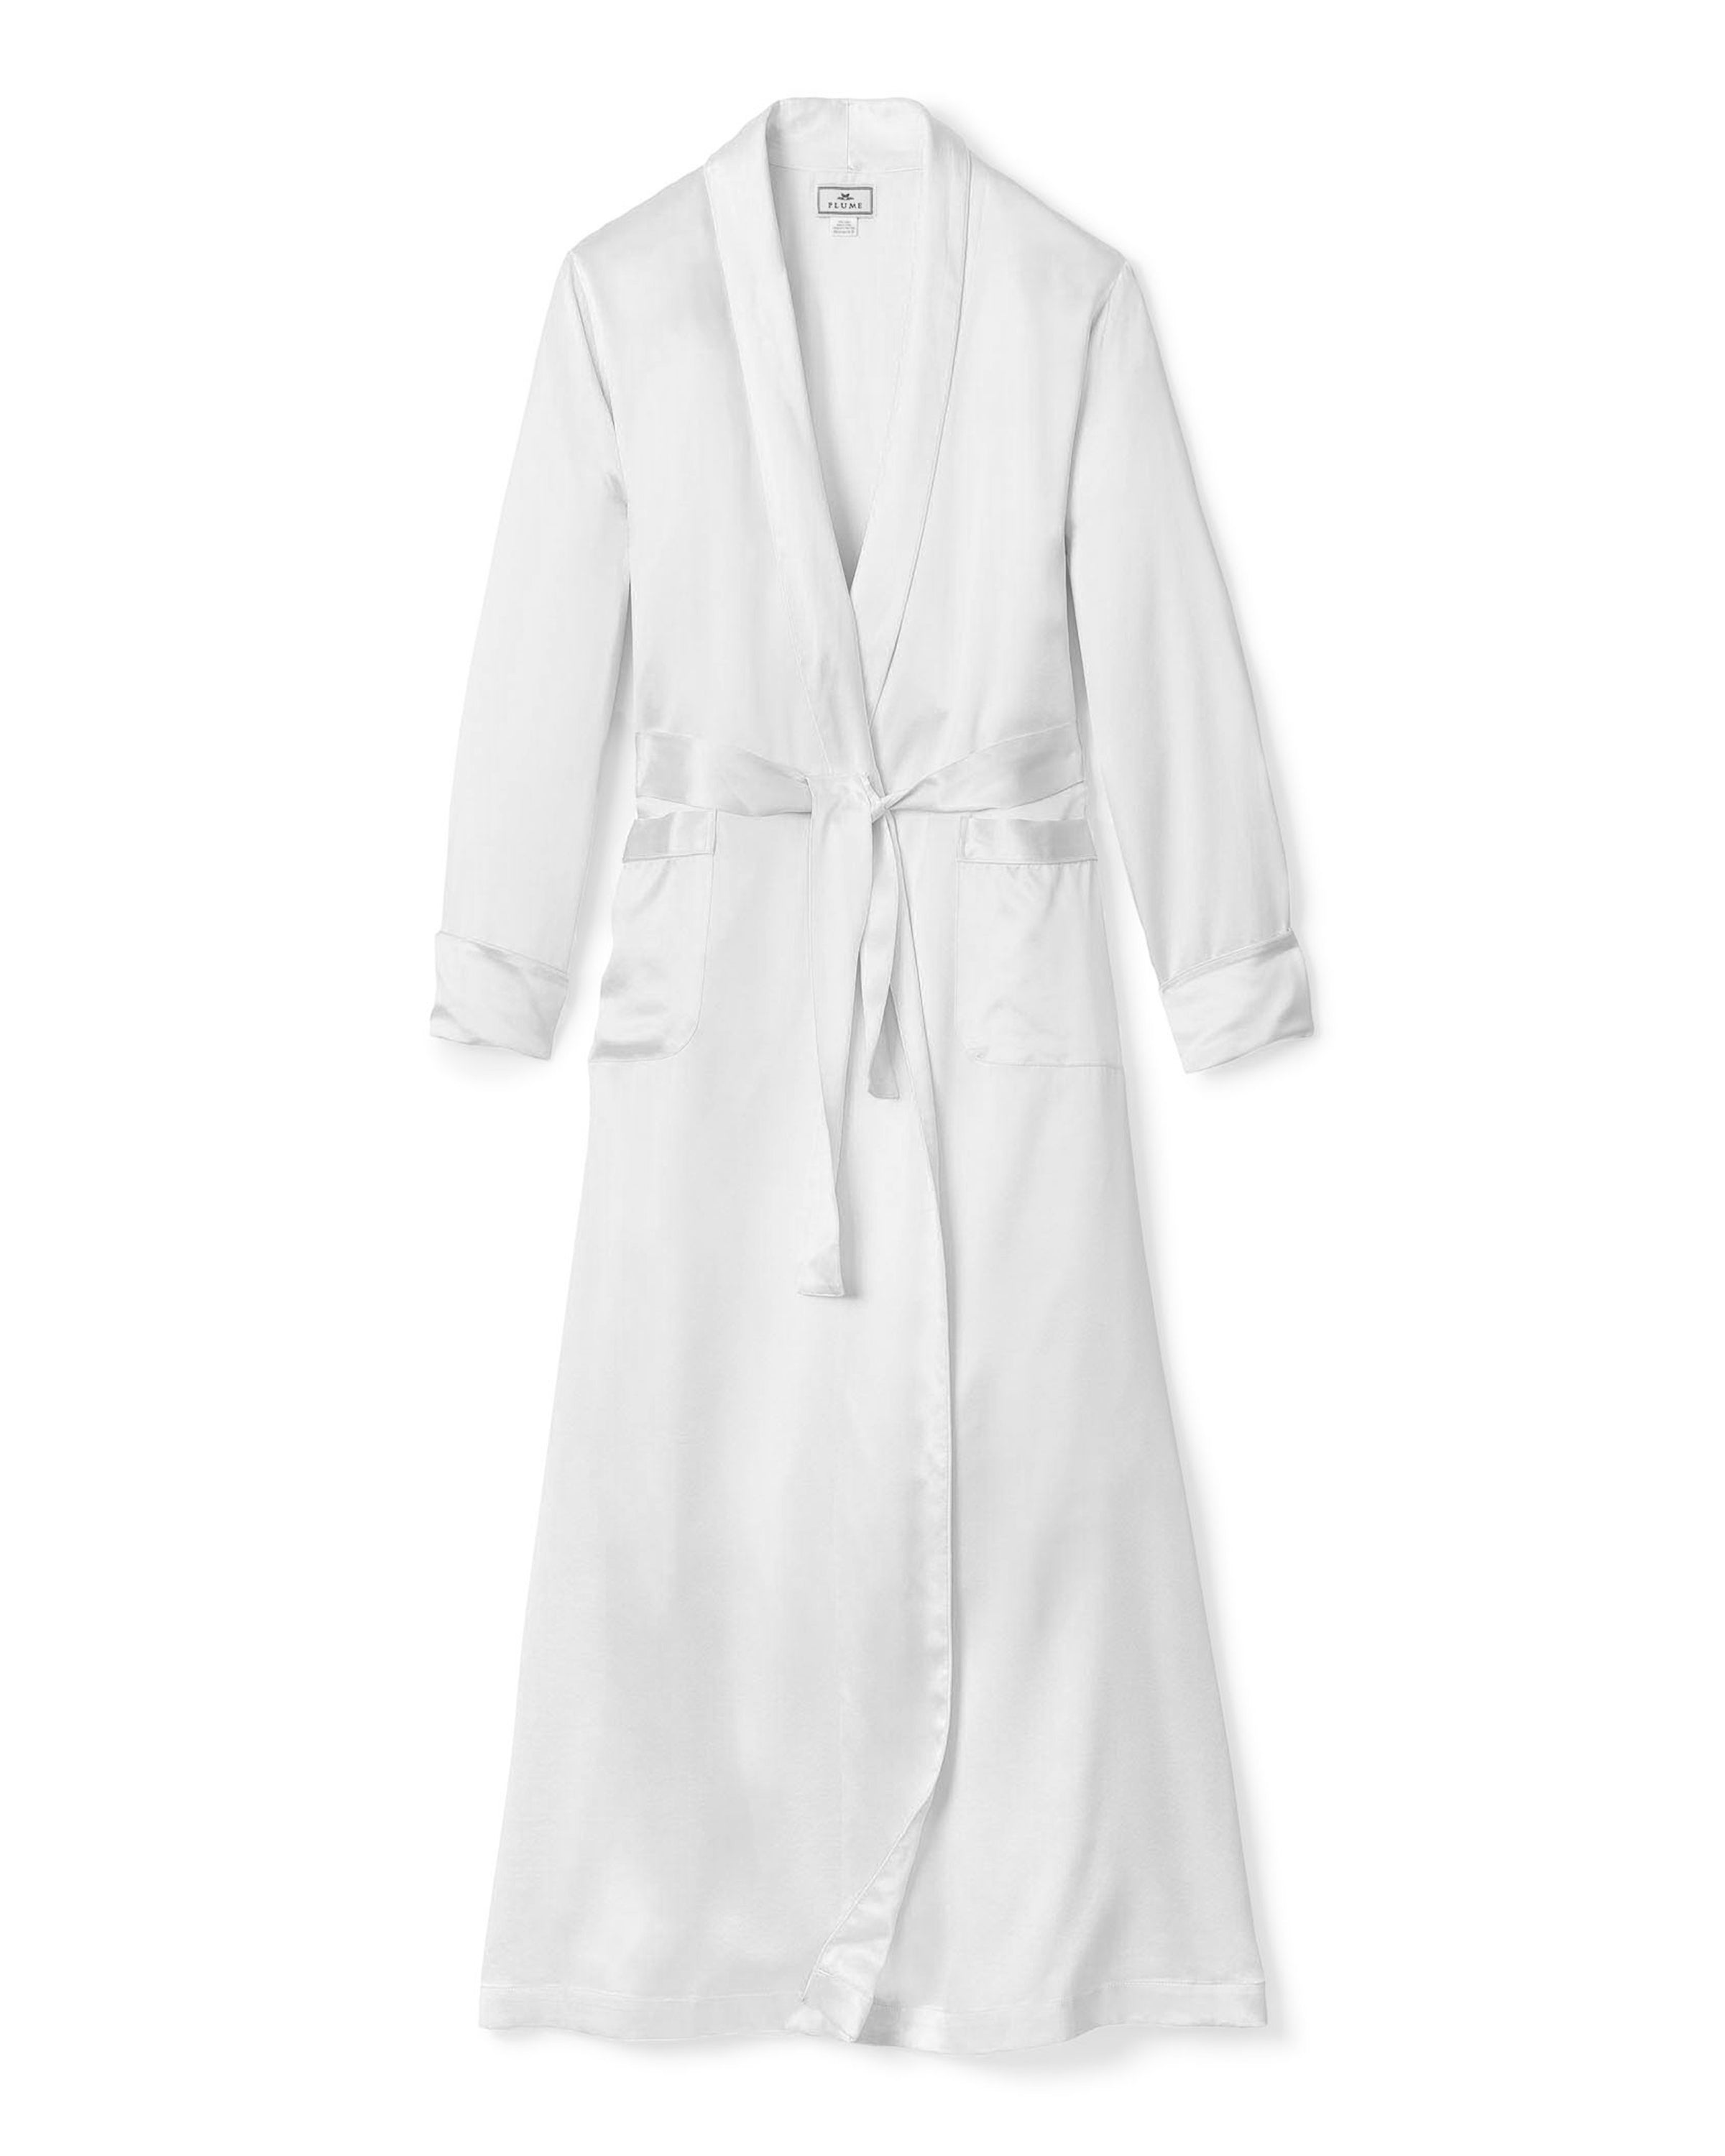 Women's Silk Cosette Nightgown in White